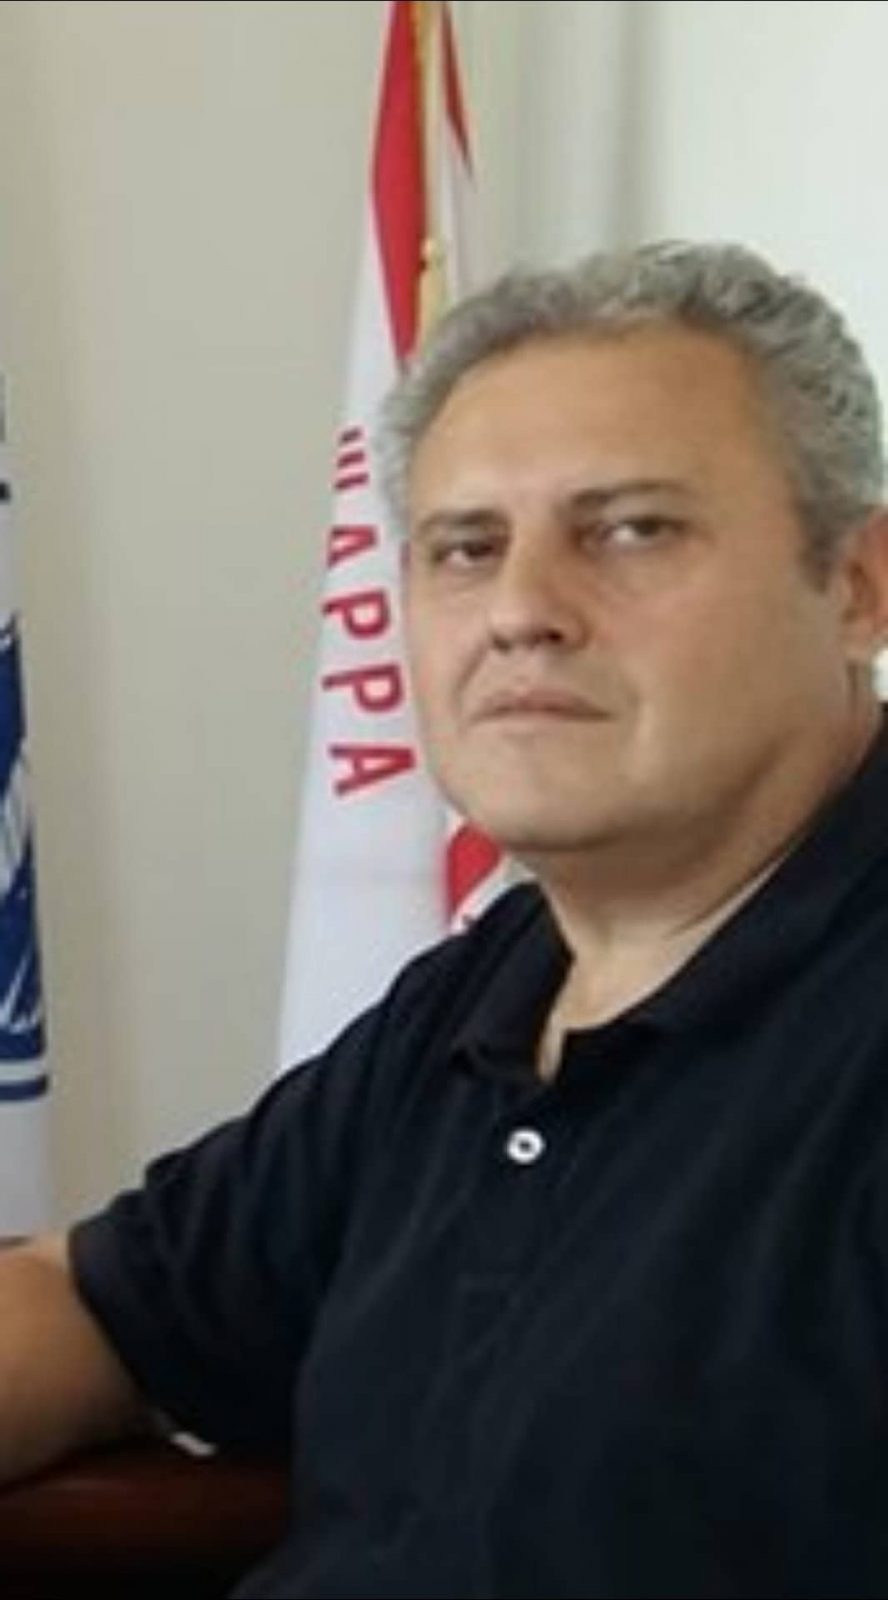 Ο Σύλλογος Εργαζομένων ΟΤΑ ευχαριστεί τον πρόεδρο του Δημοτικού Συμβουλίου Διρφύων Μεσσαπίων